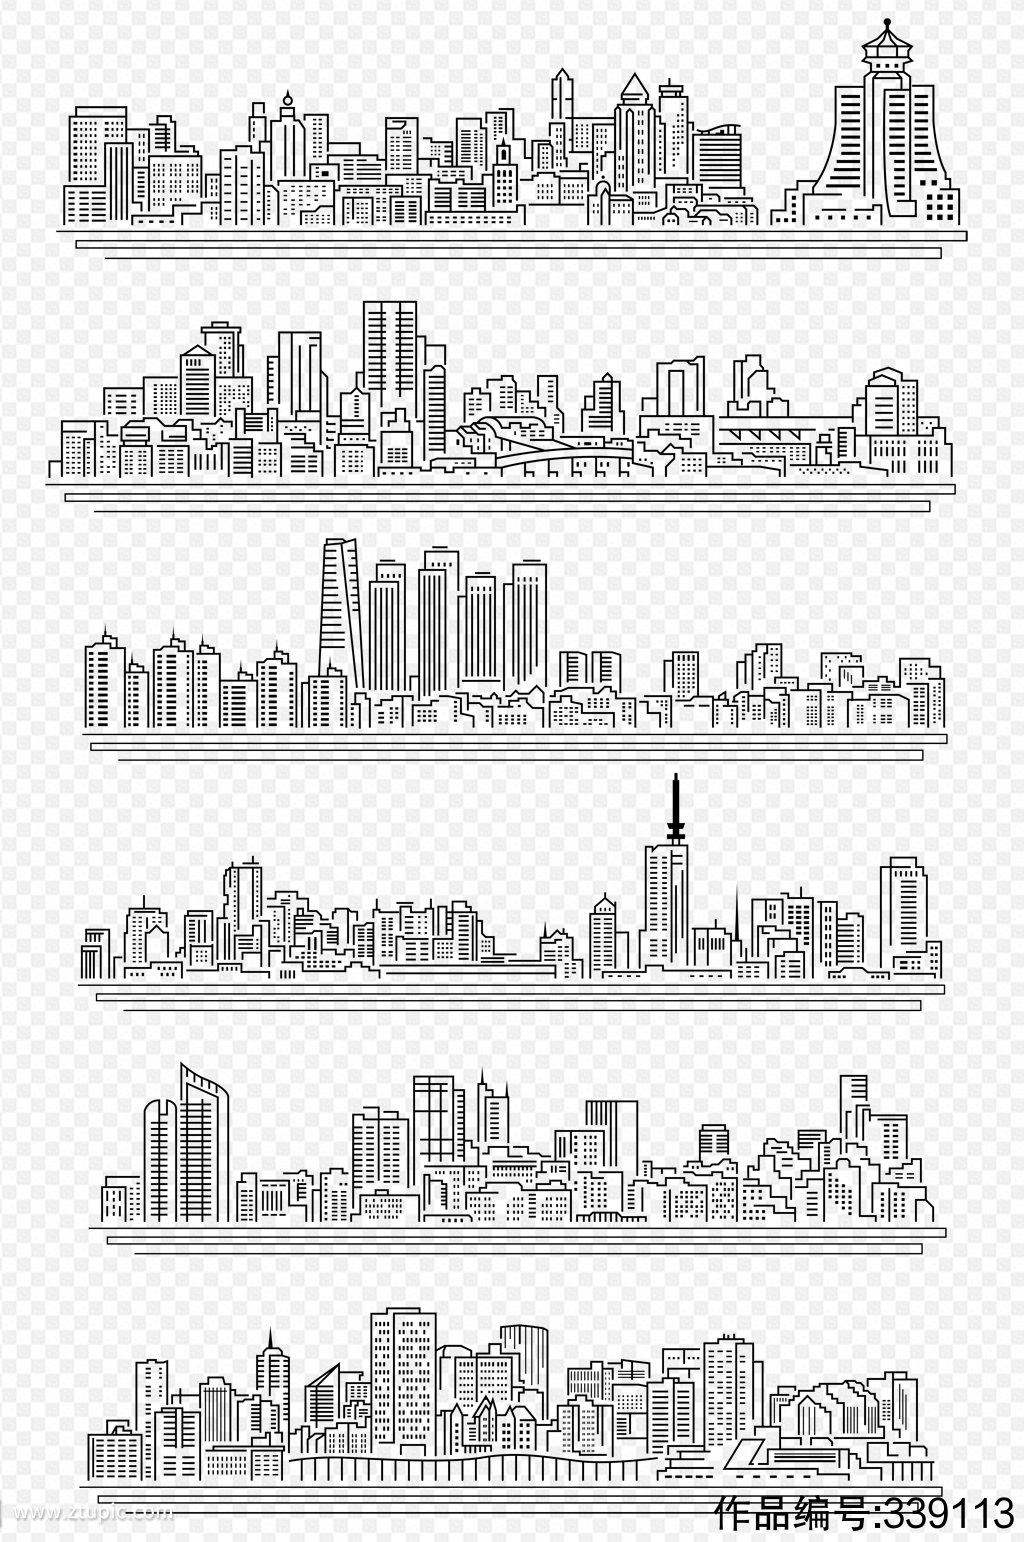 高楼大厦城市线描画素材